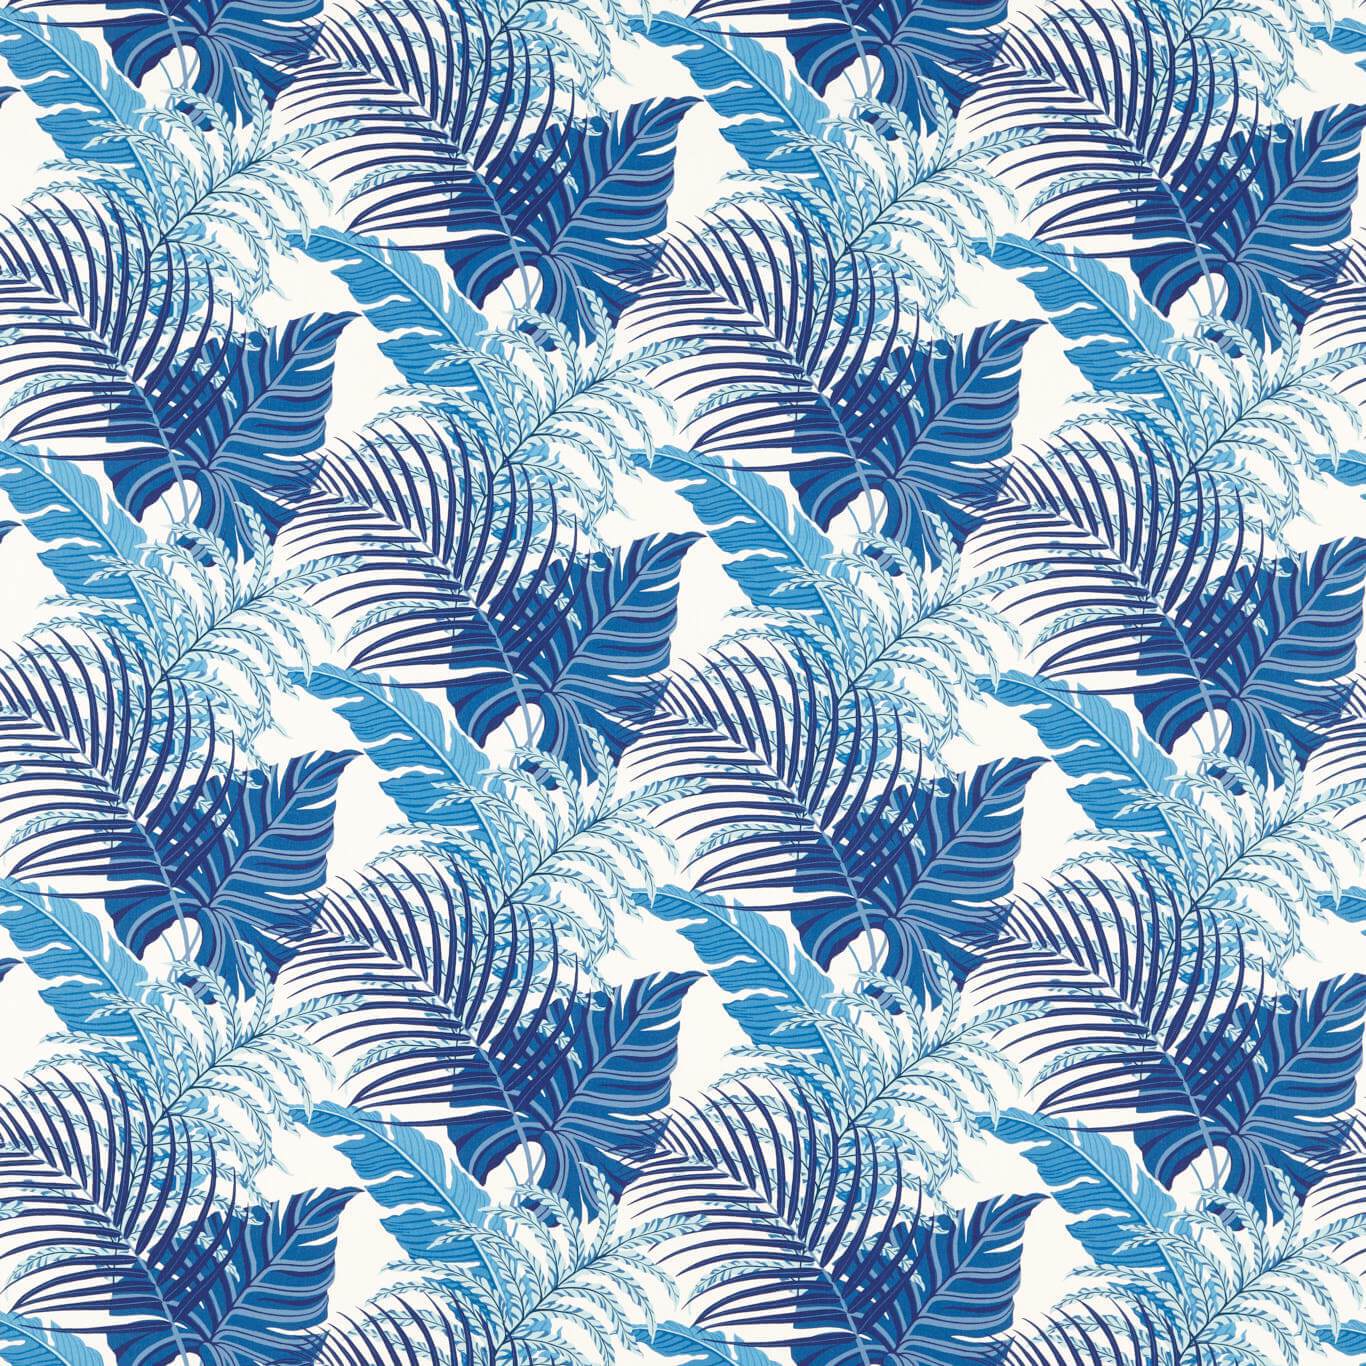 Manila French Blue Fabric by SAN